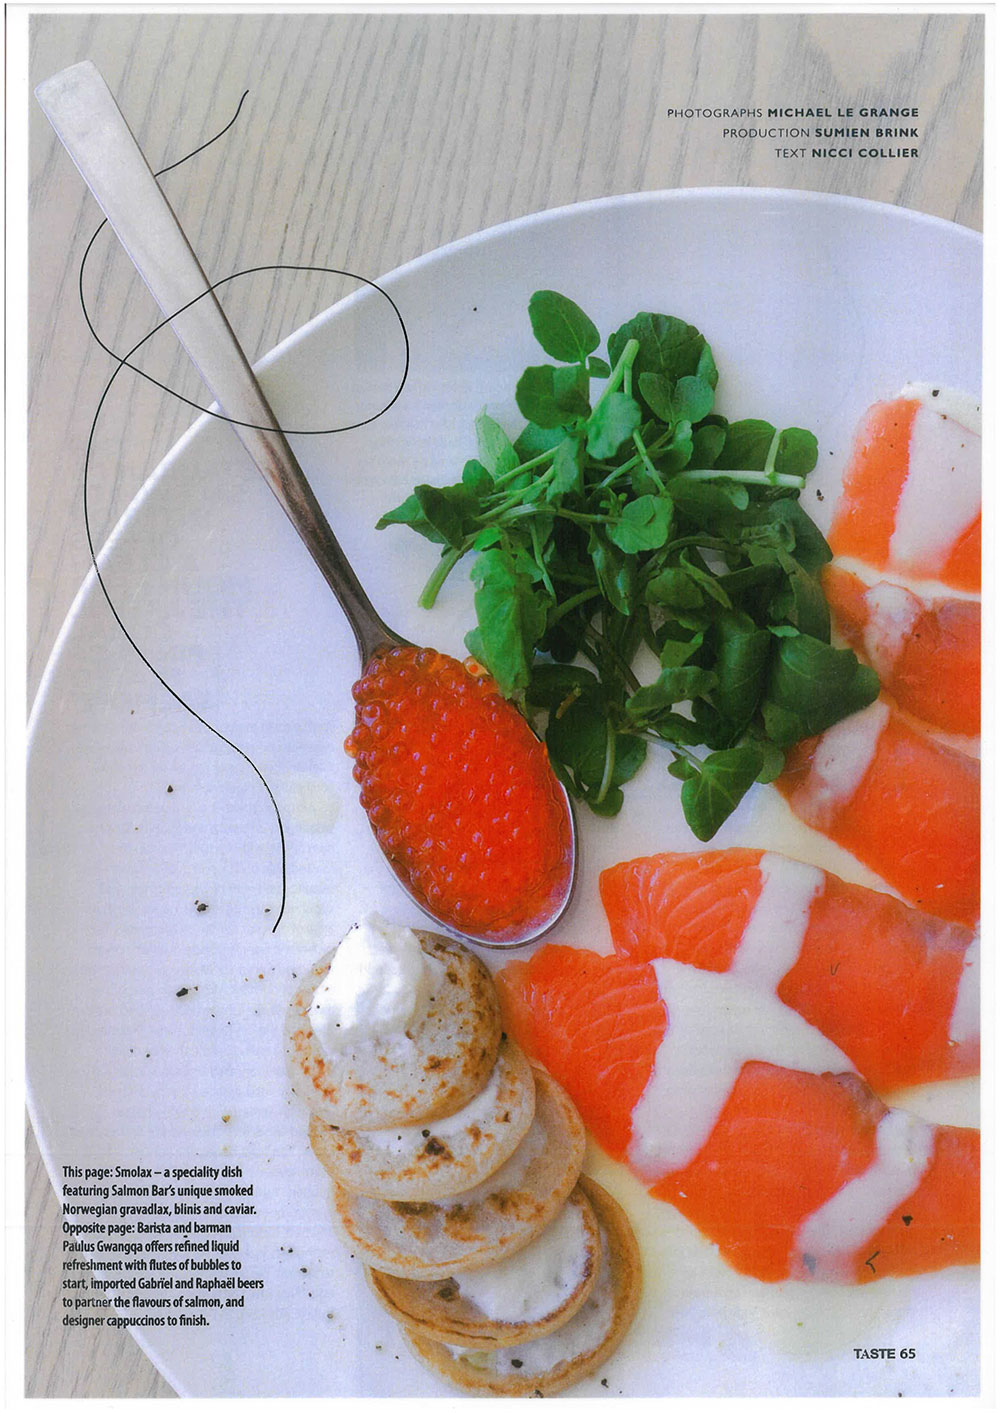 Salmon Bar Franschoek Taste Magazine PG65